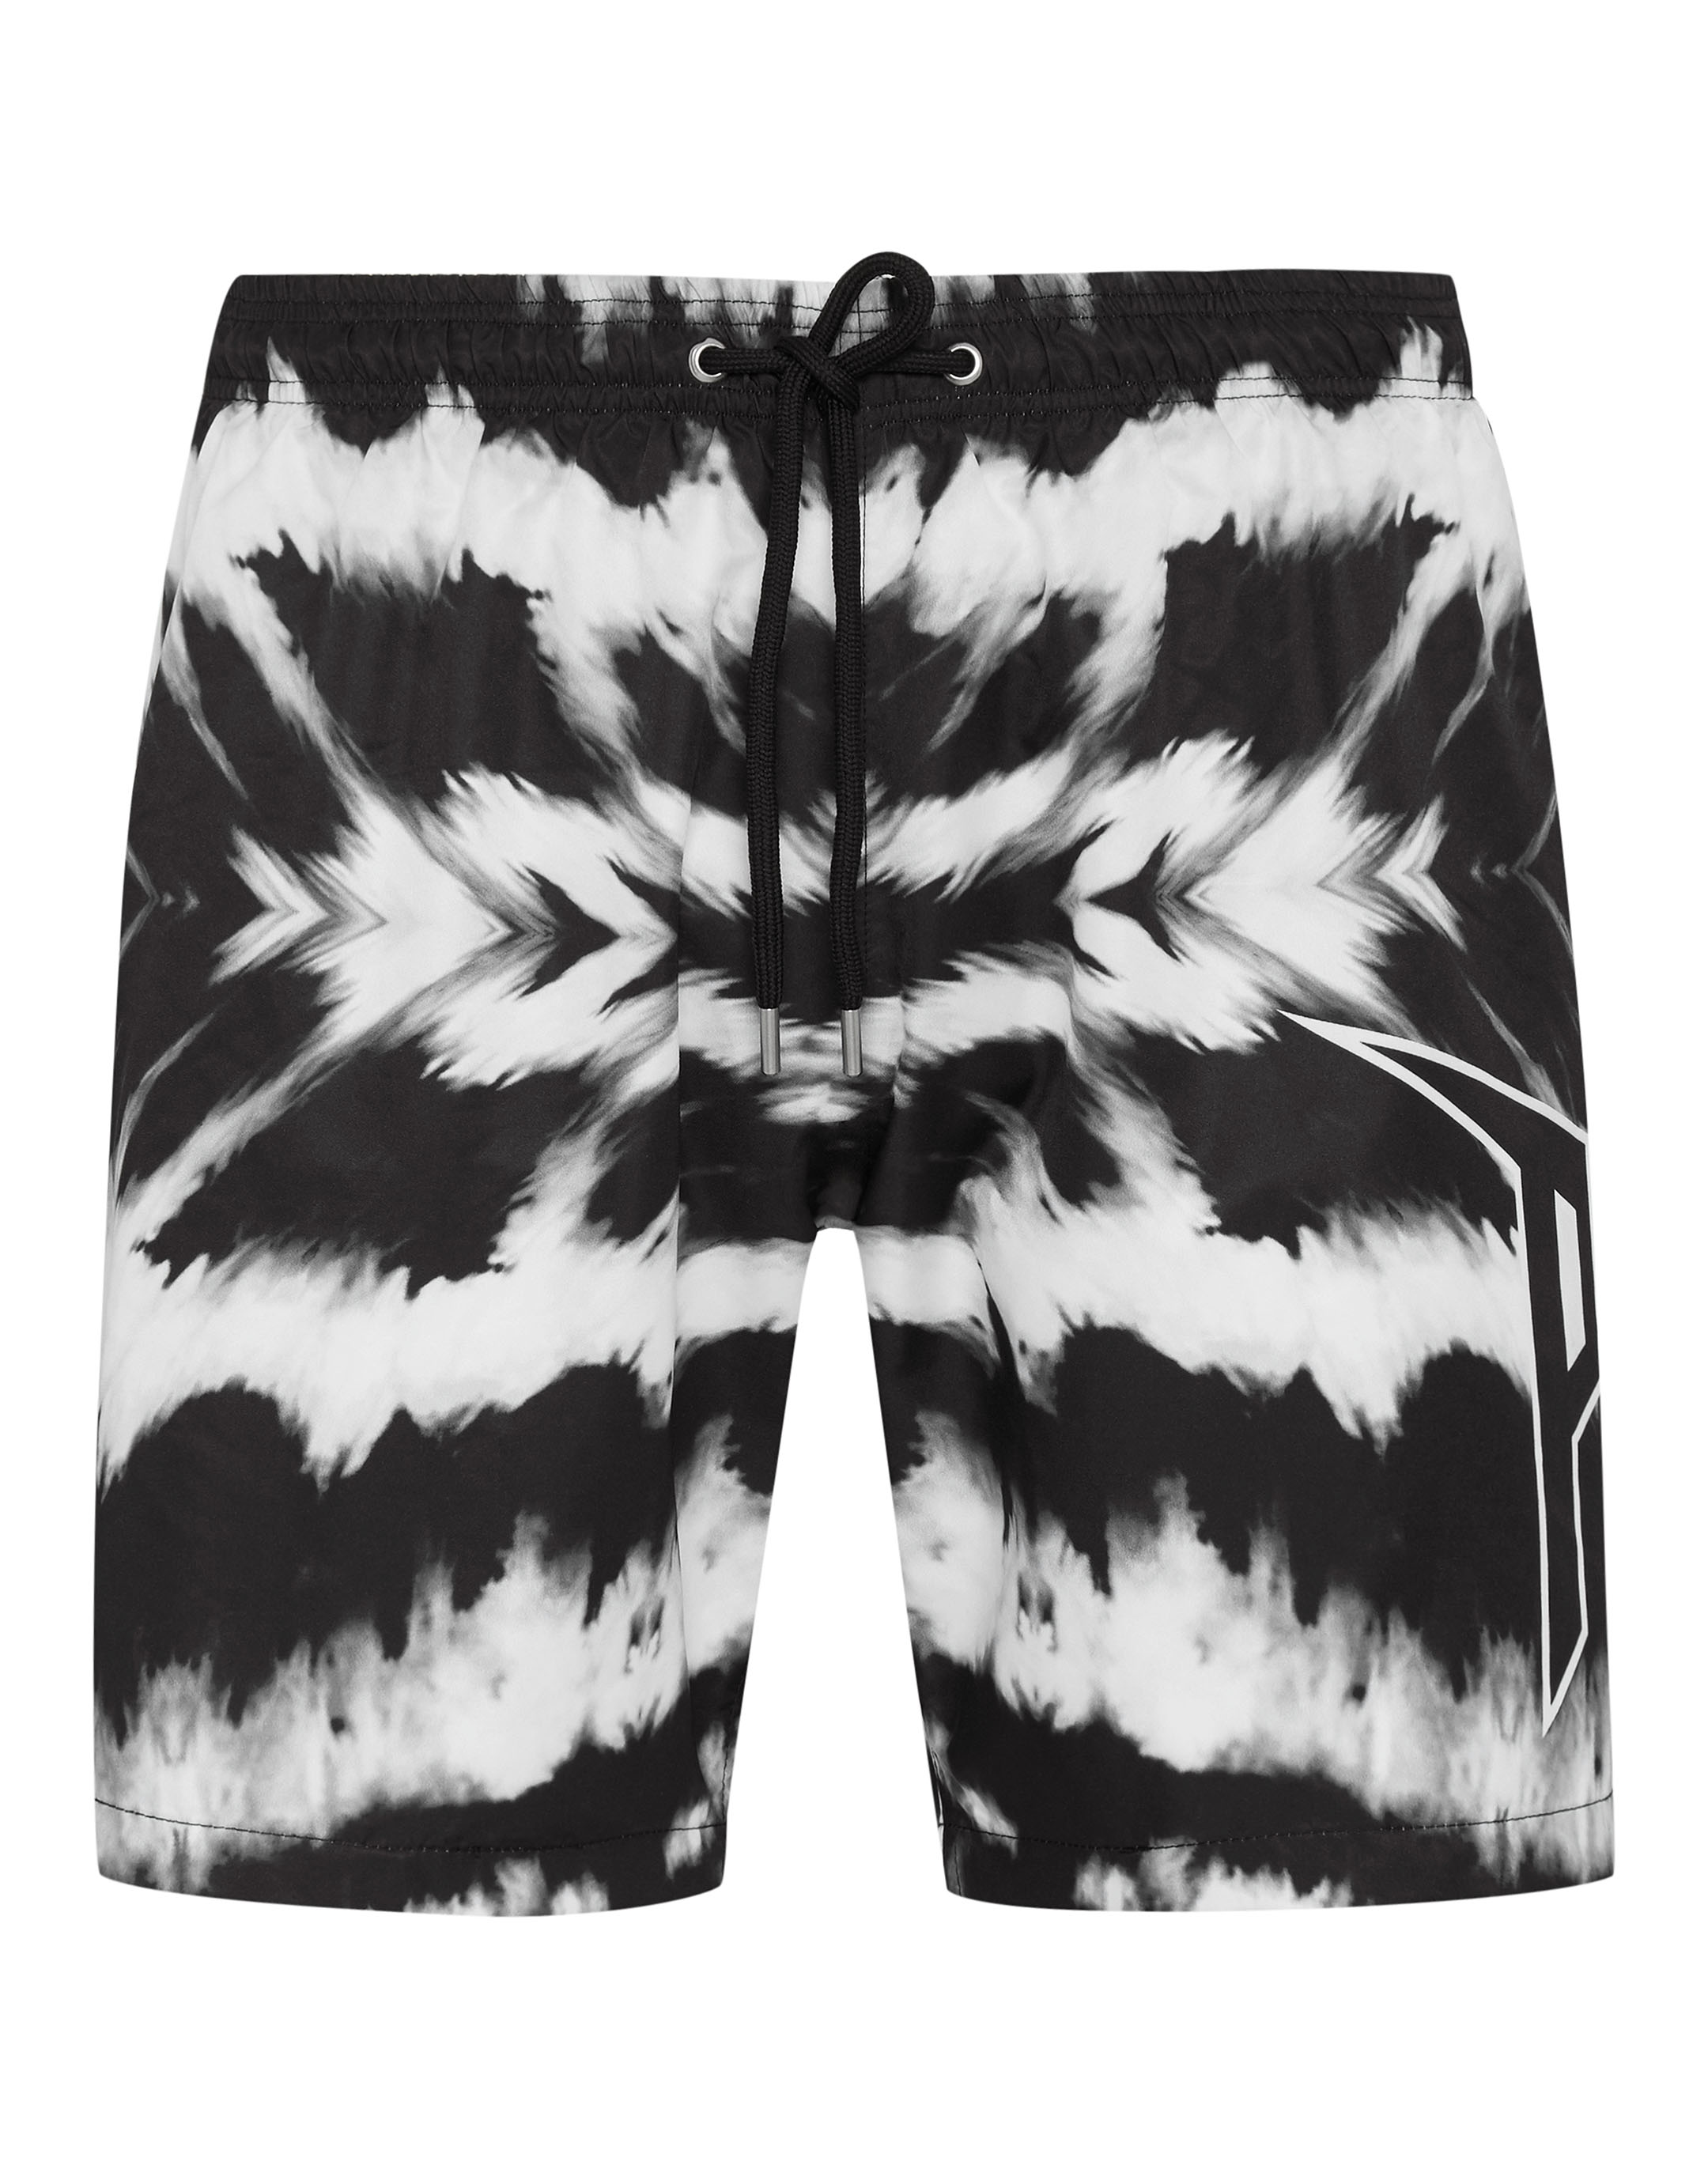 Beachwear Short Trousers Tie dye | Philipp Plein Outlet